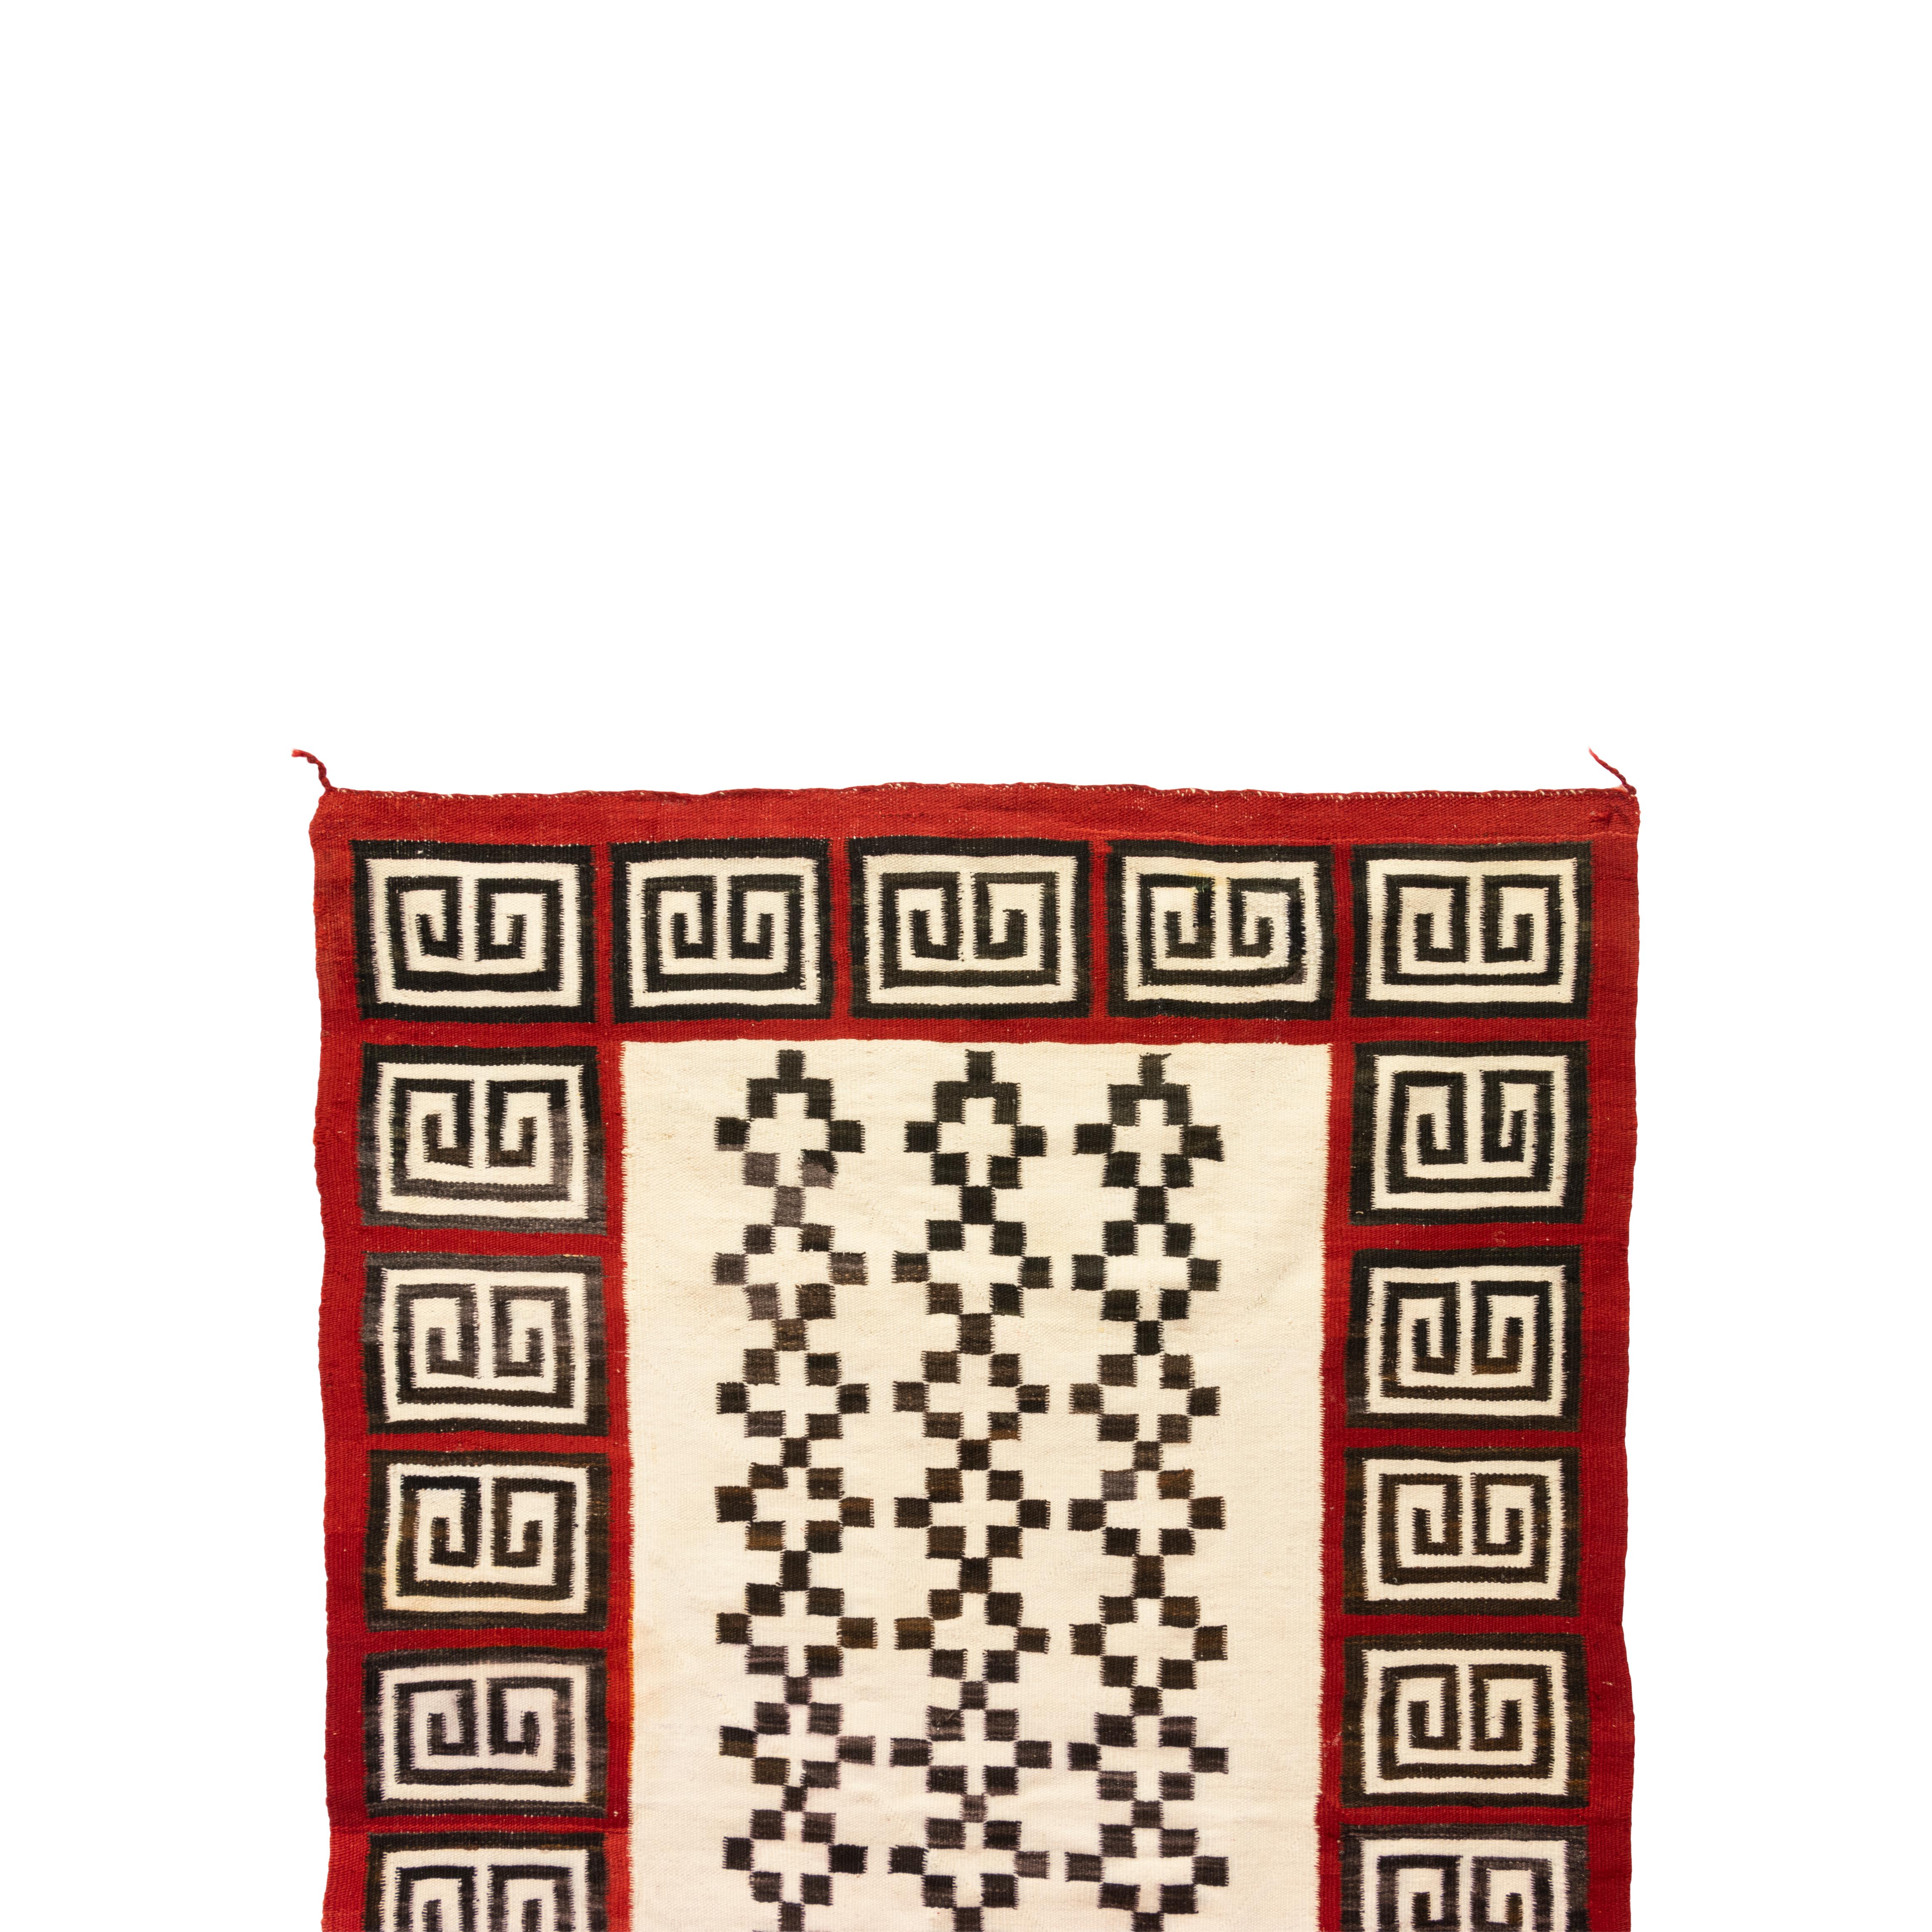 Cristal Navajo avec un centre blanc présentant des motifs de croix multiples, rouge Ganada brillant avec des variations. 37